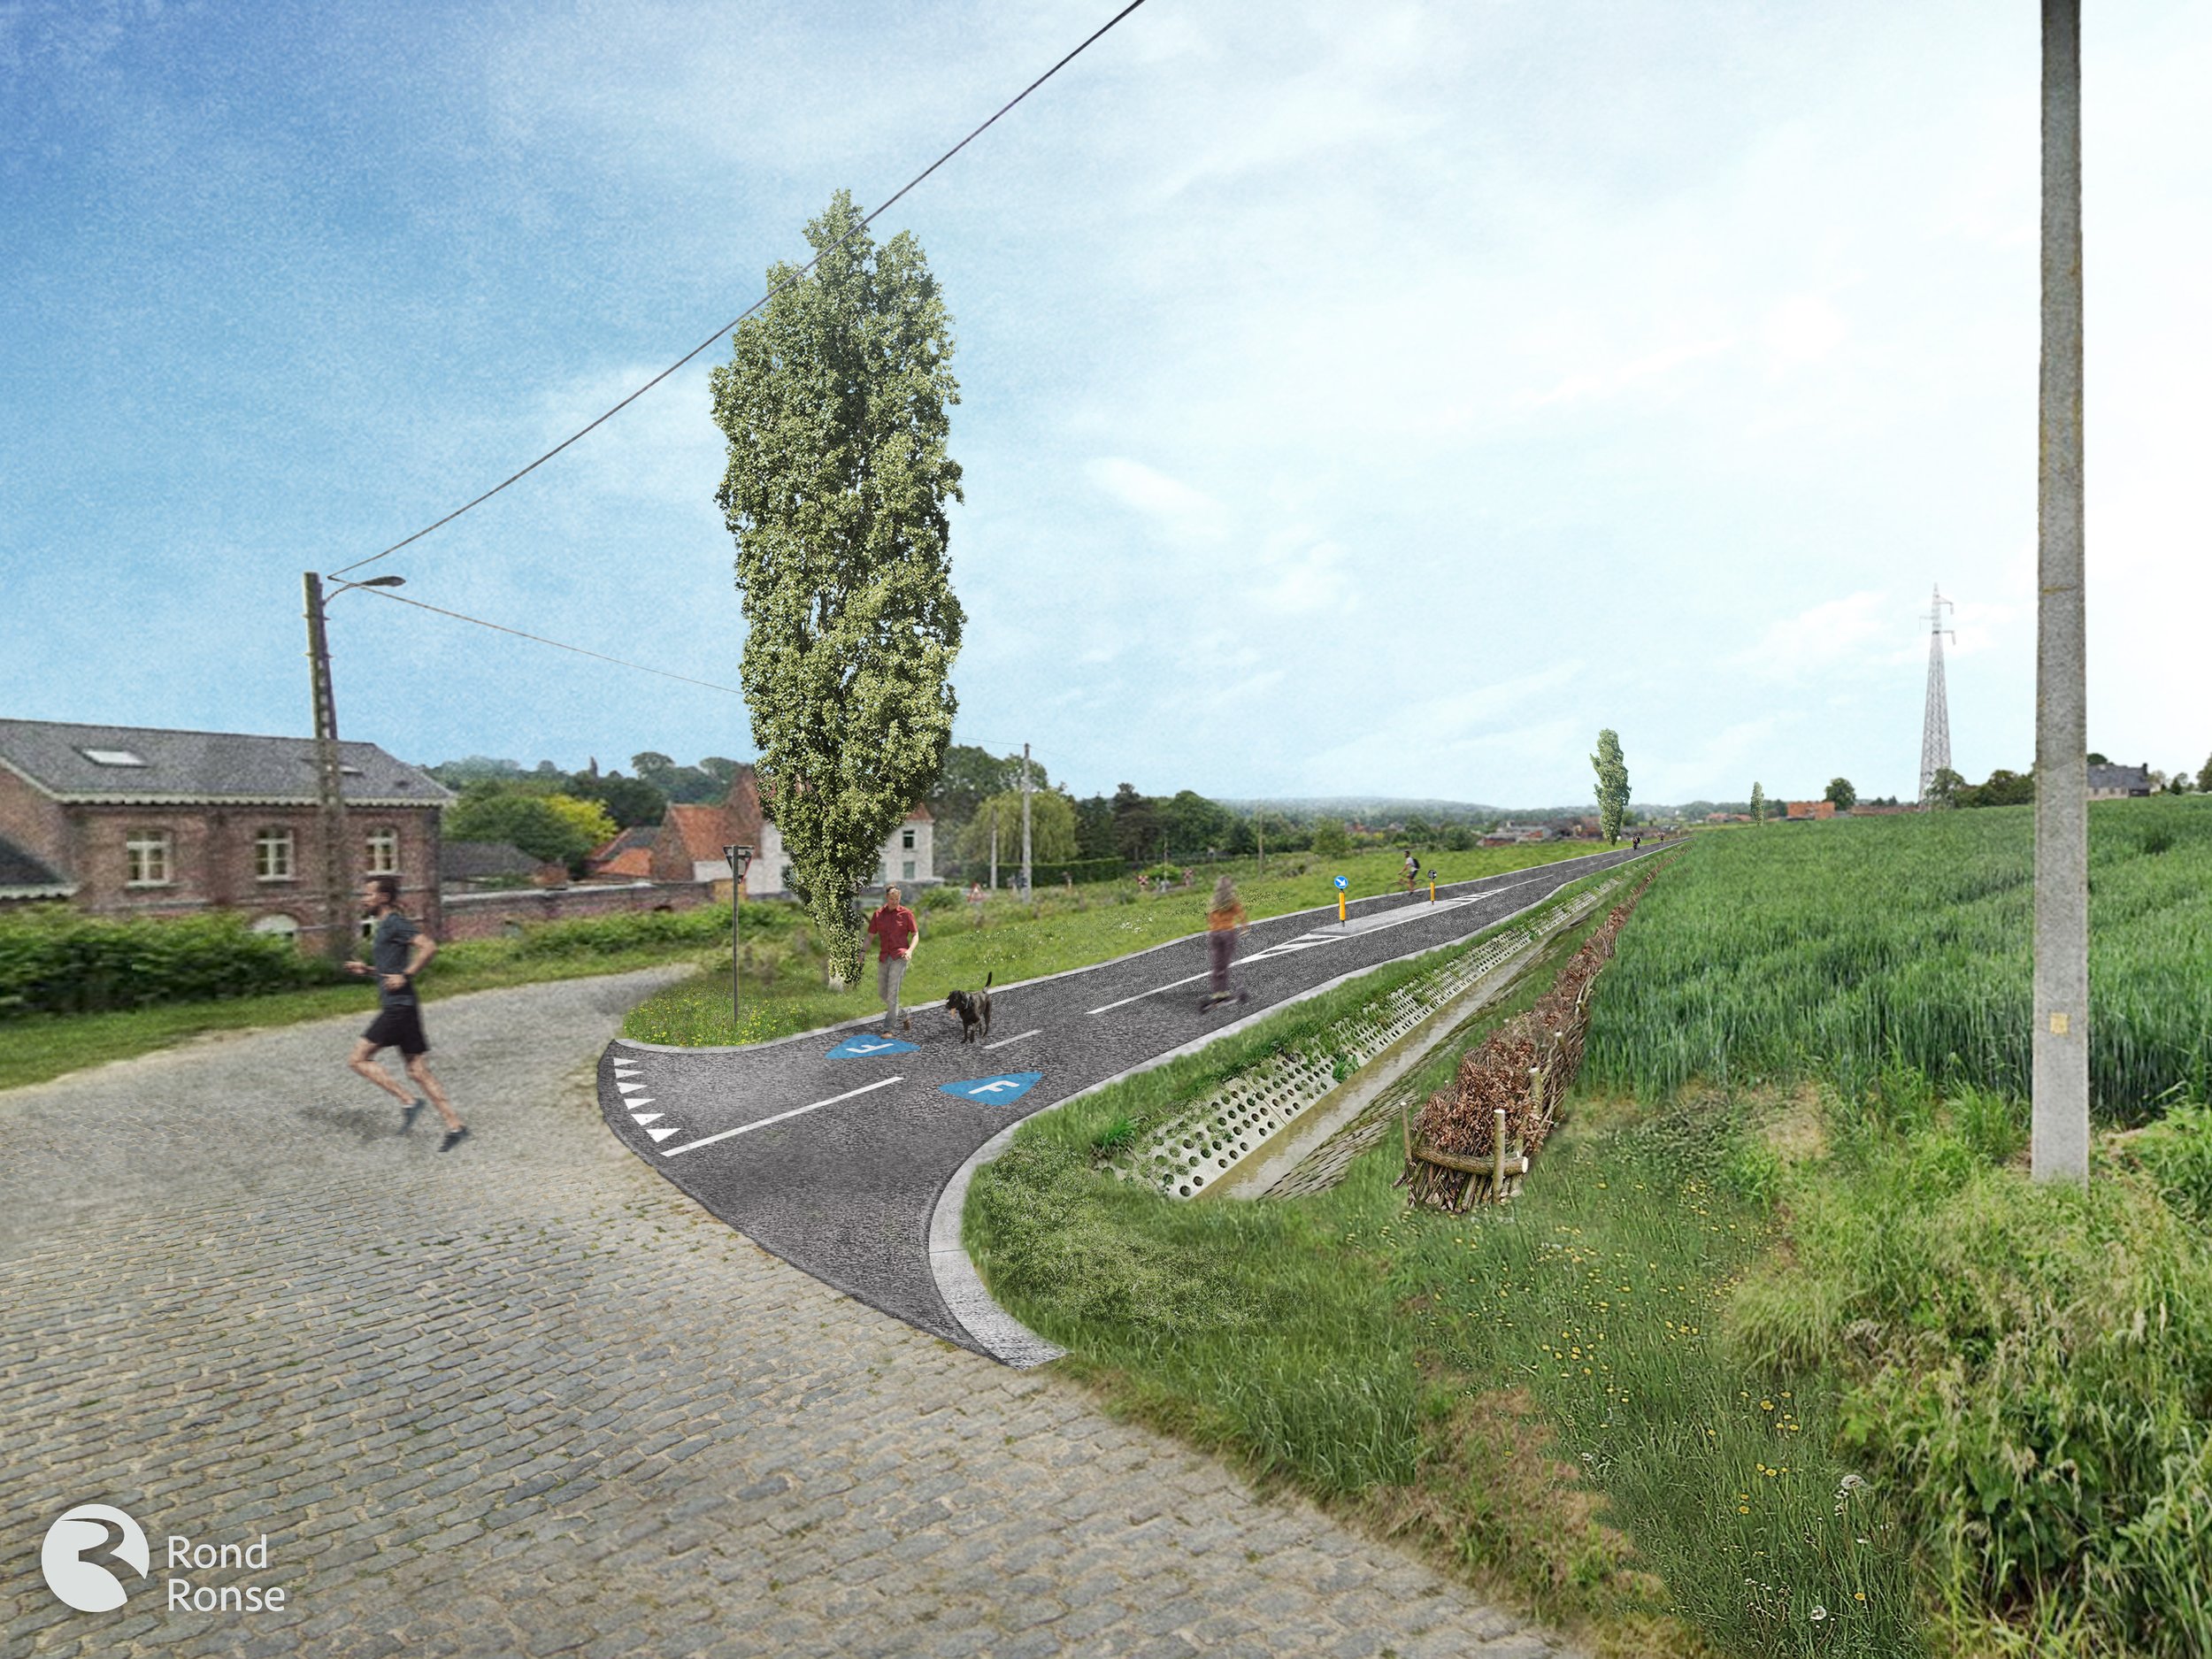   Impression de la liaison de Stationsberg vers Mussestraat. Construction d'un barrage anti-érosion tout au long la route cyclable.  